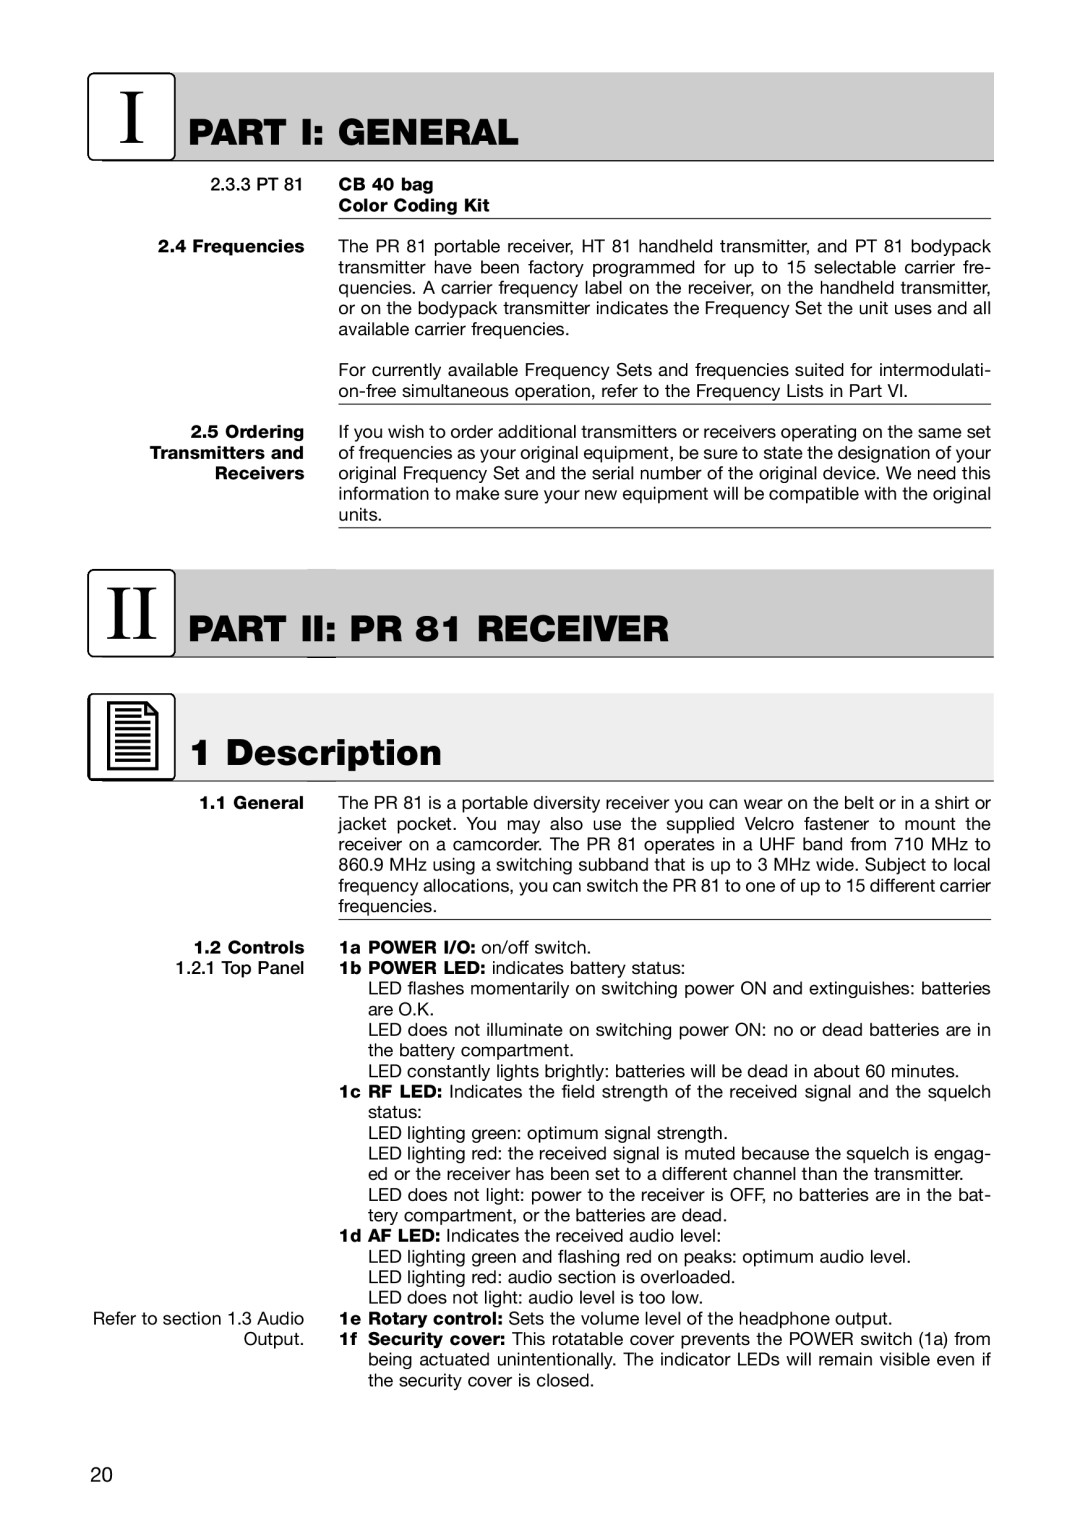 AKG Acoustics HT 81 manual II PART II PR 81 RECEIVER 1 Description, I Part I General, 2.3.3PT 81 CB 40 bag Color Coding Kit 